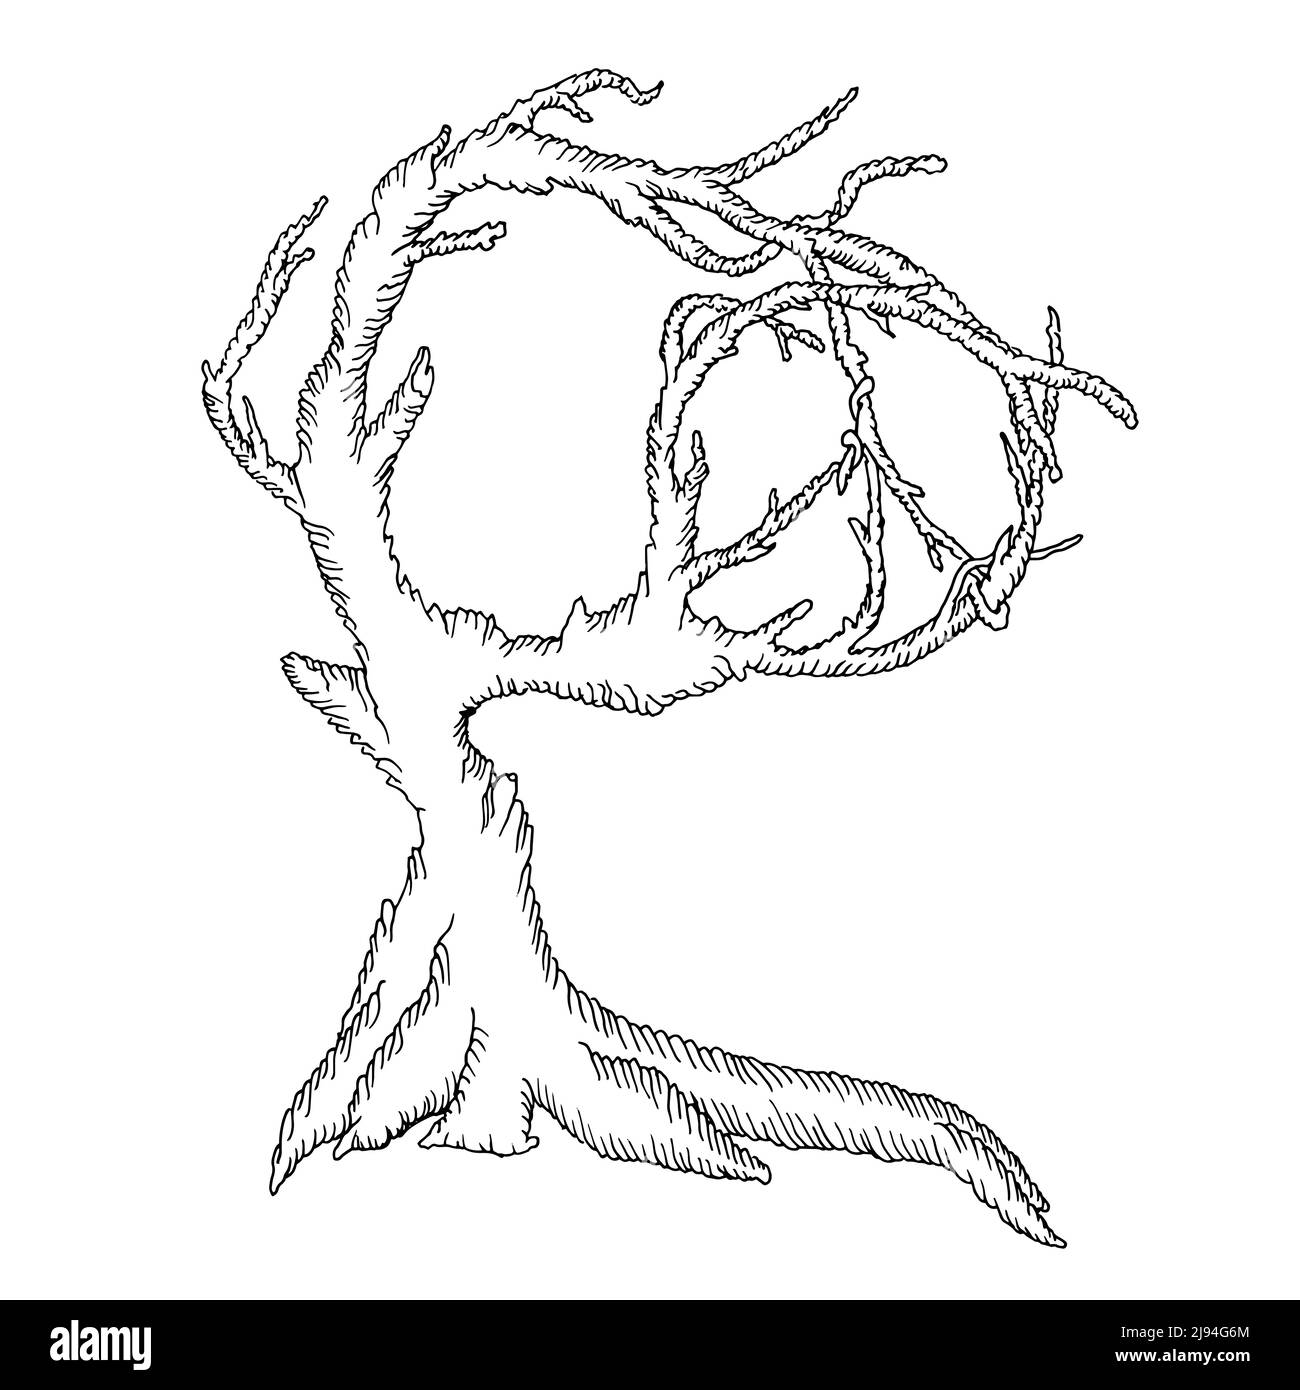 Illustration eines alten Baumes mit Friedenszeichen, Friedens- oder Freiheitskonzept, Vektordarstellung Stock Vektor